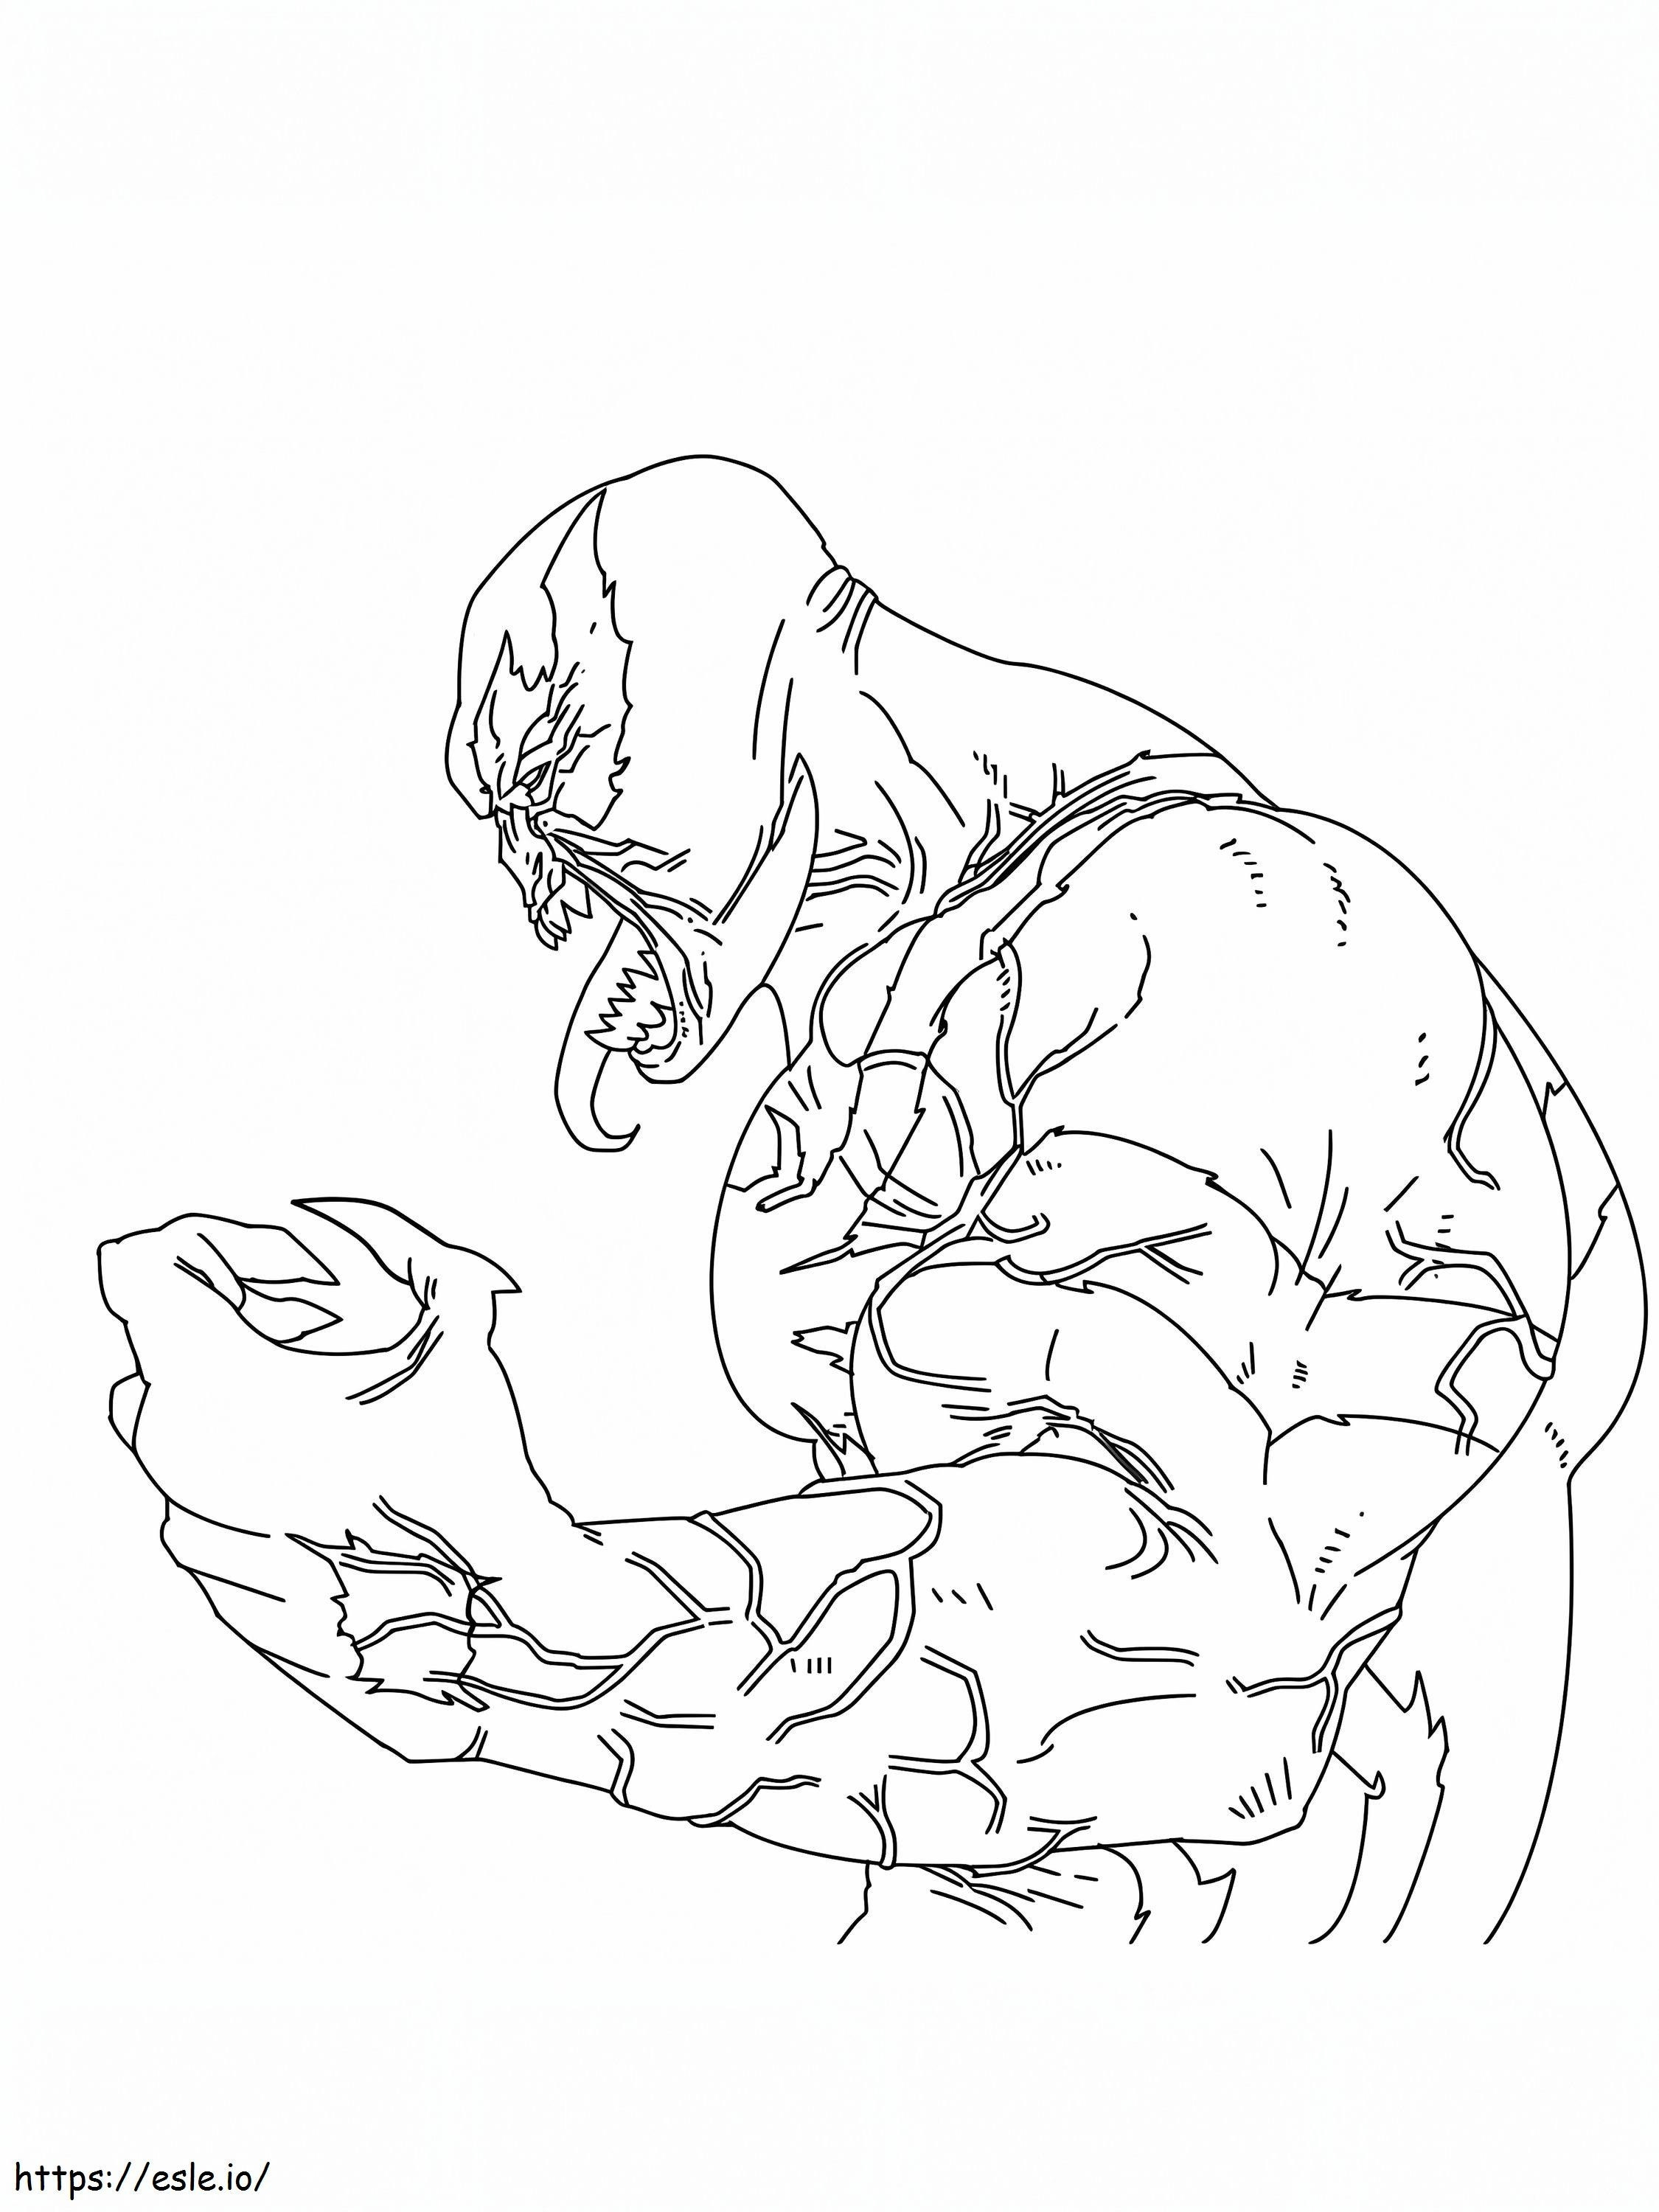 Mighty Venom coloring page